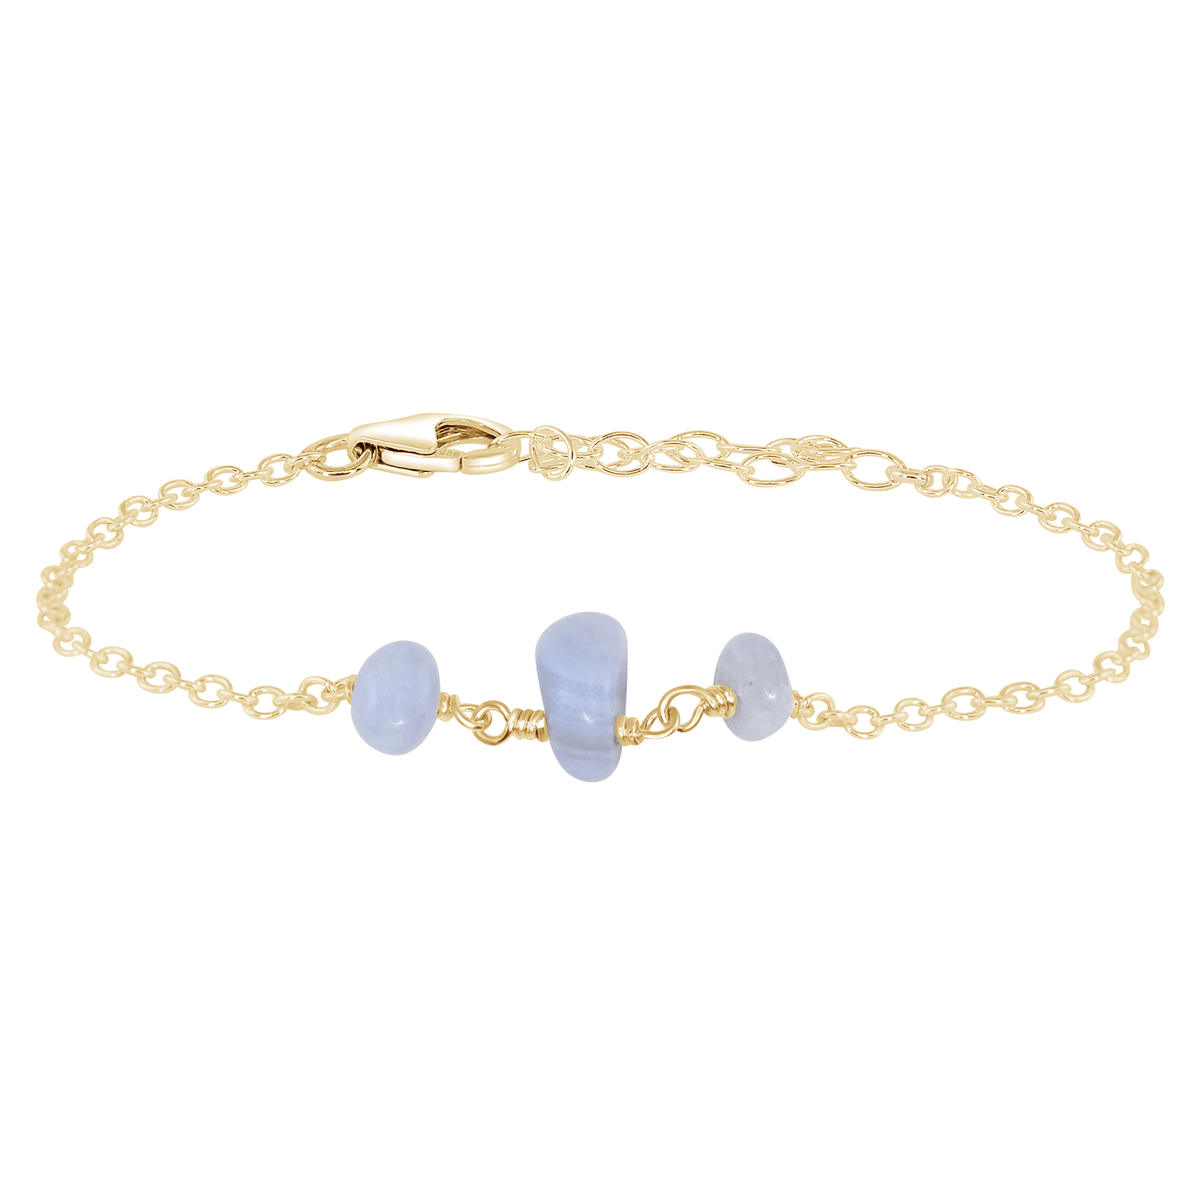 Beaded Chain Bracelet - Blue Lace Agate - 14K Gold Fill - Luna Tide Handmade Jewellery